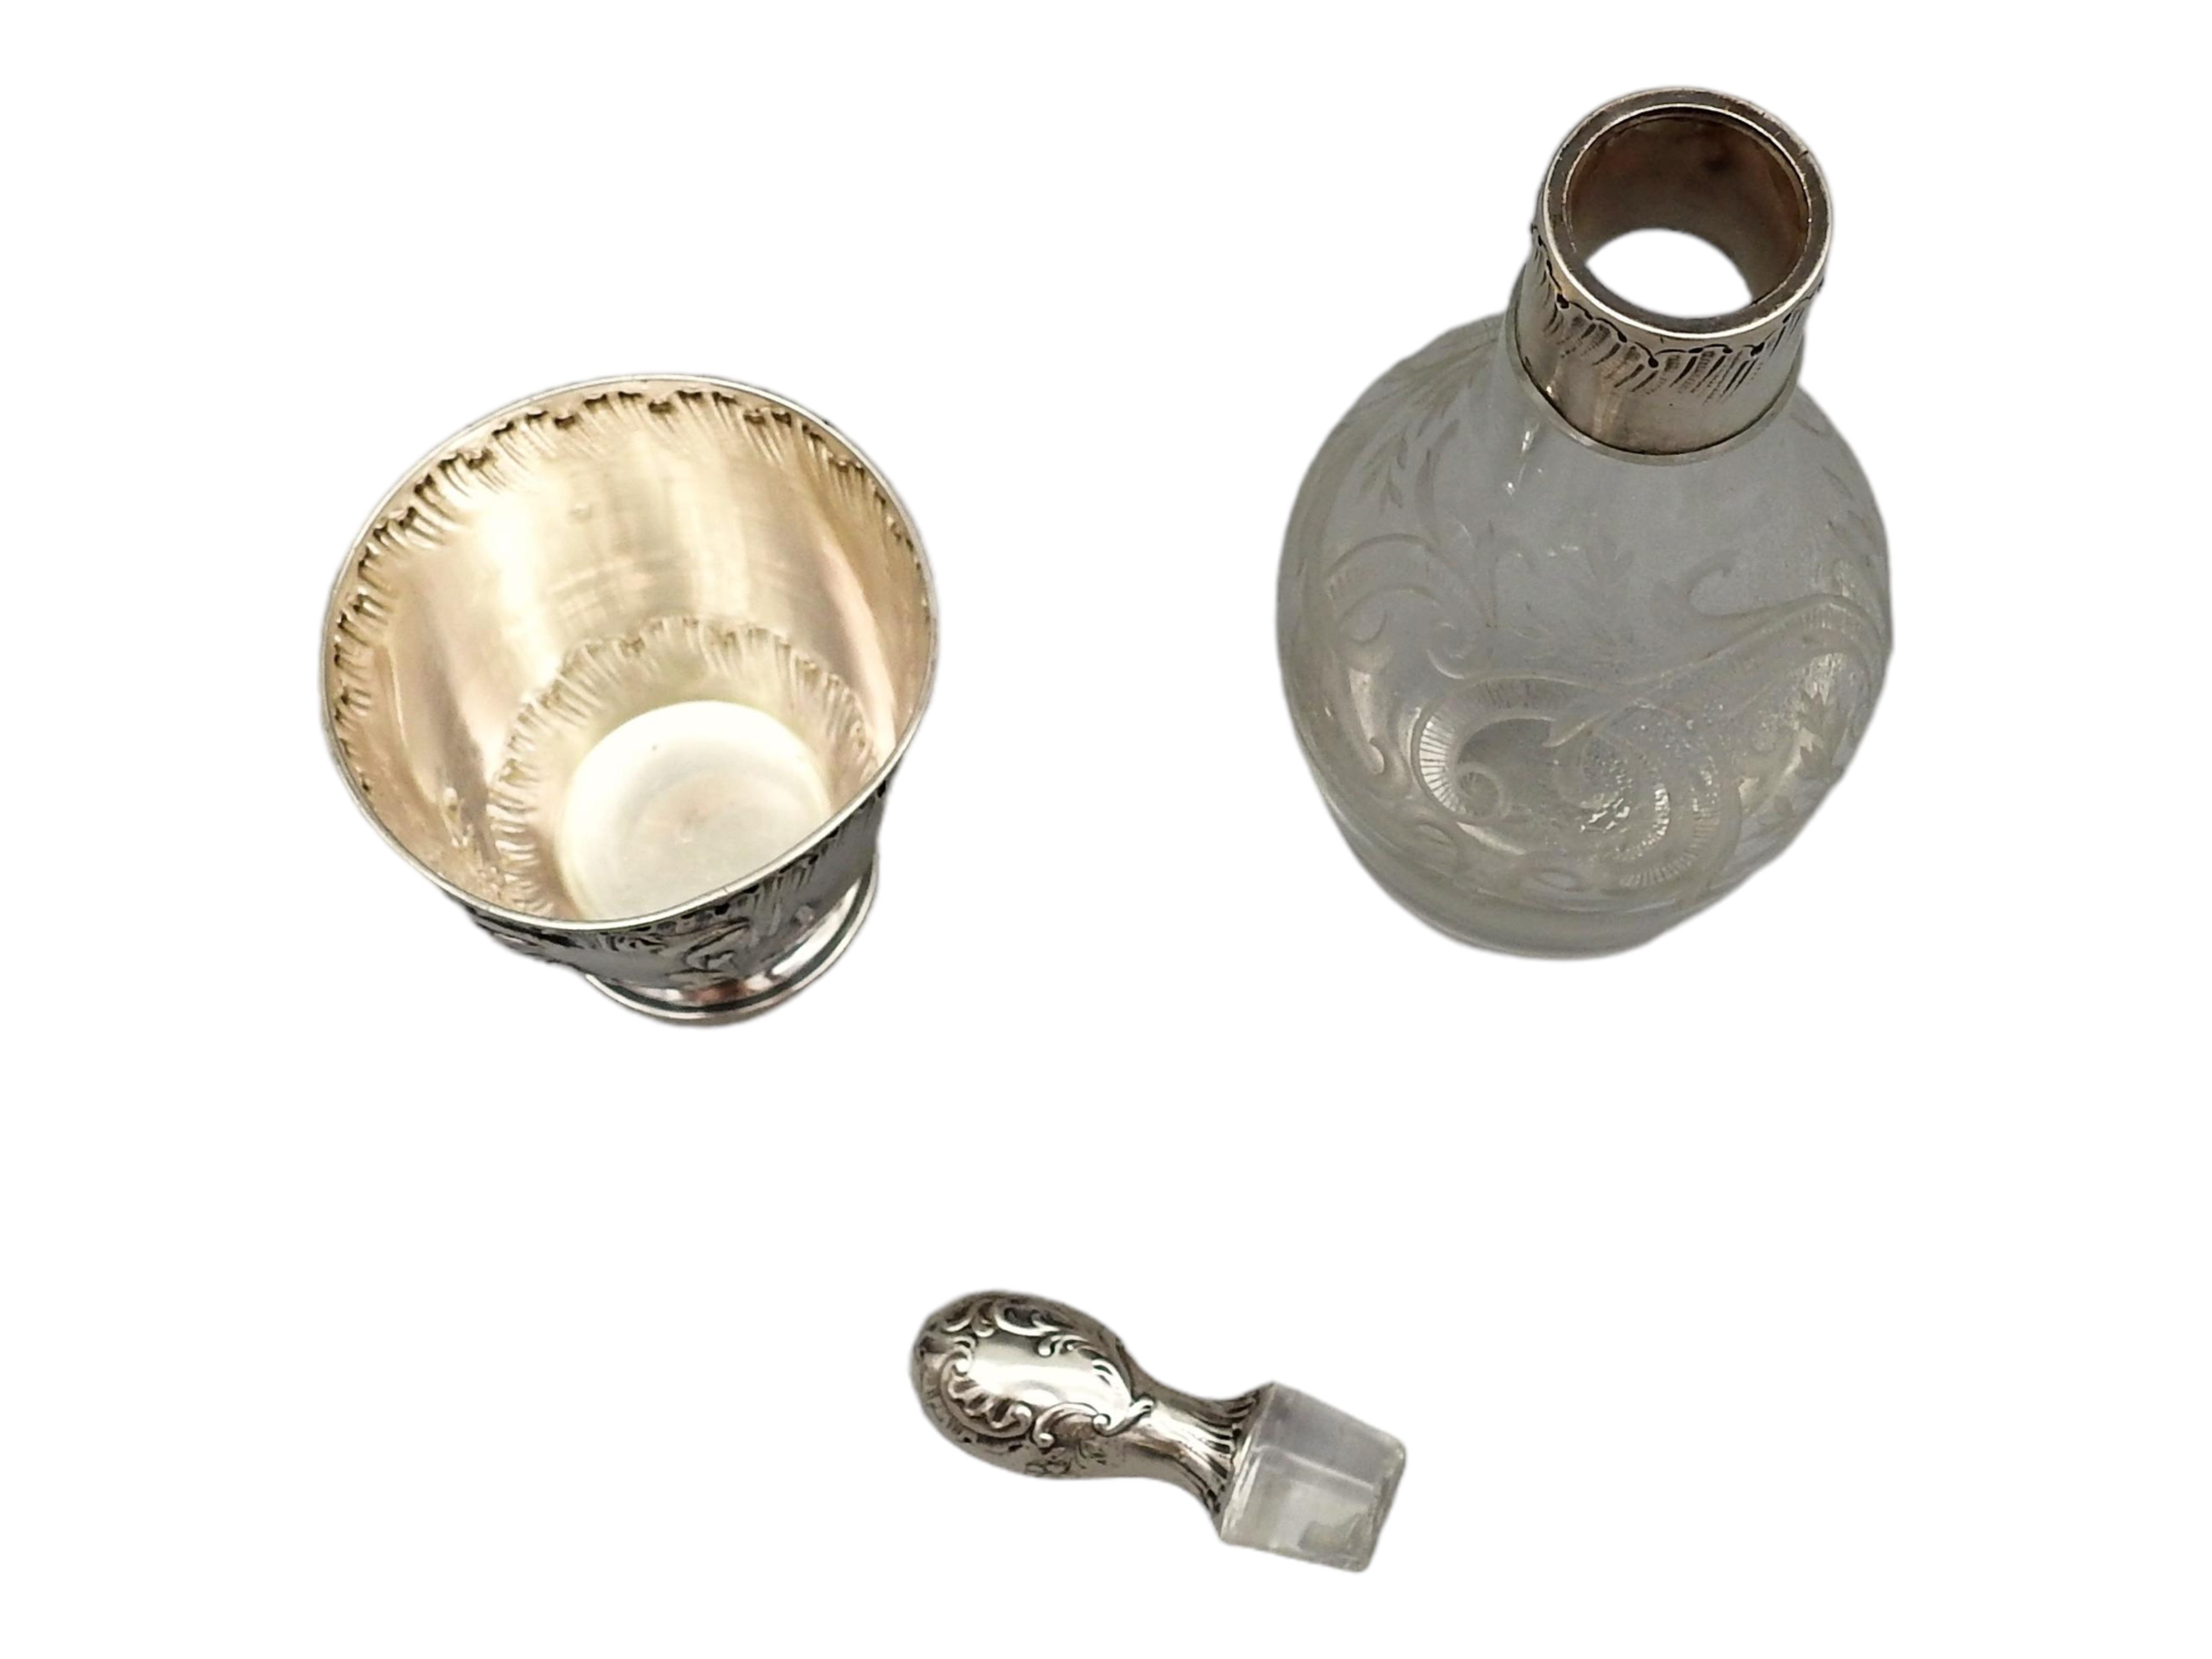 Schnapsflasche mit Silbermontur und Fussbecher - Image 10 of 10